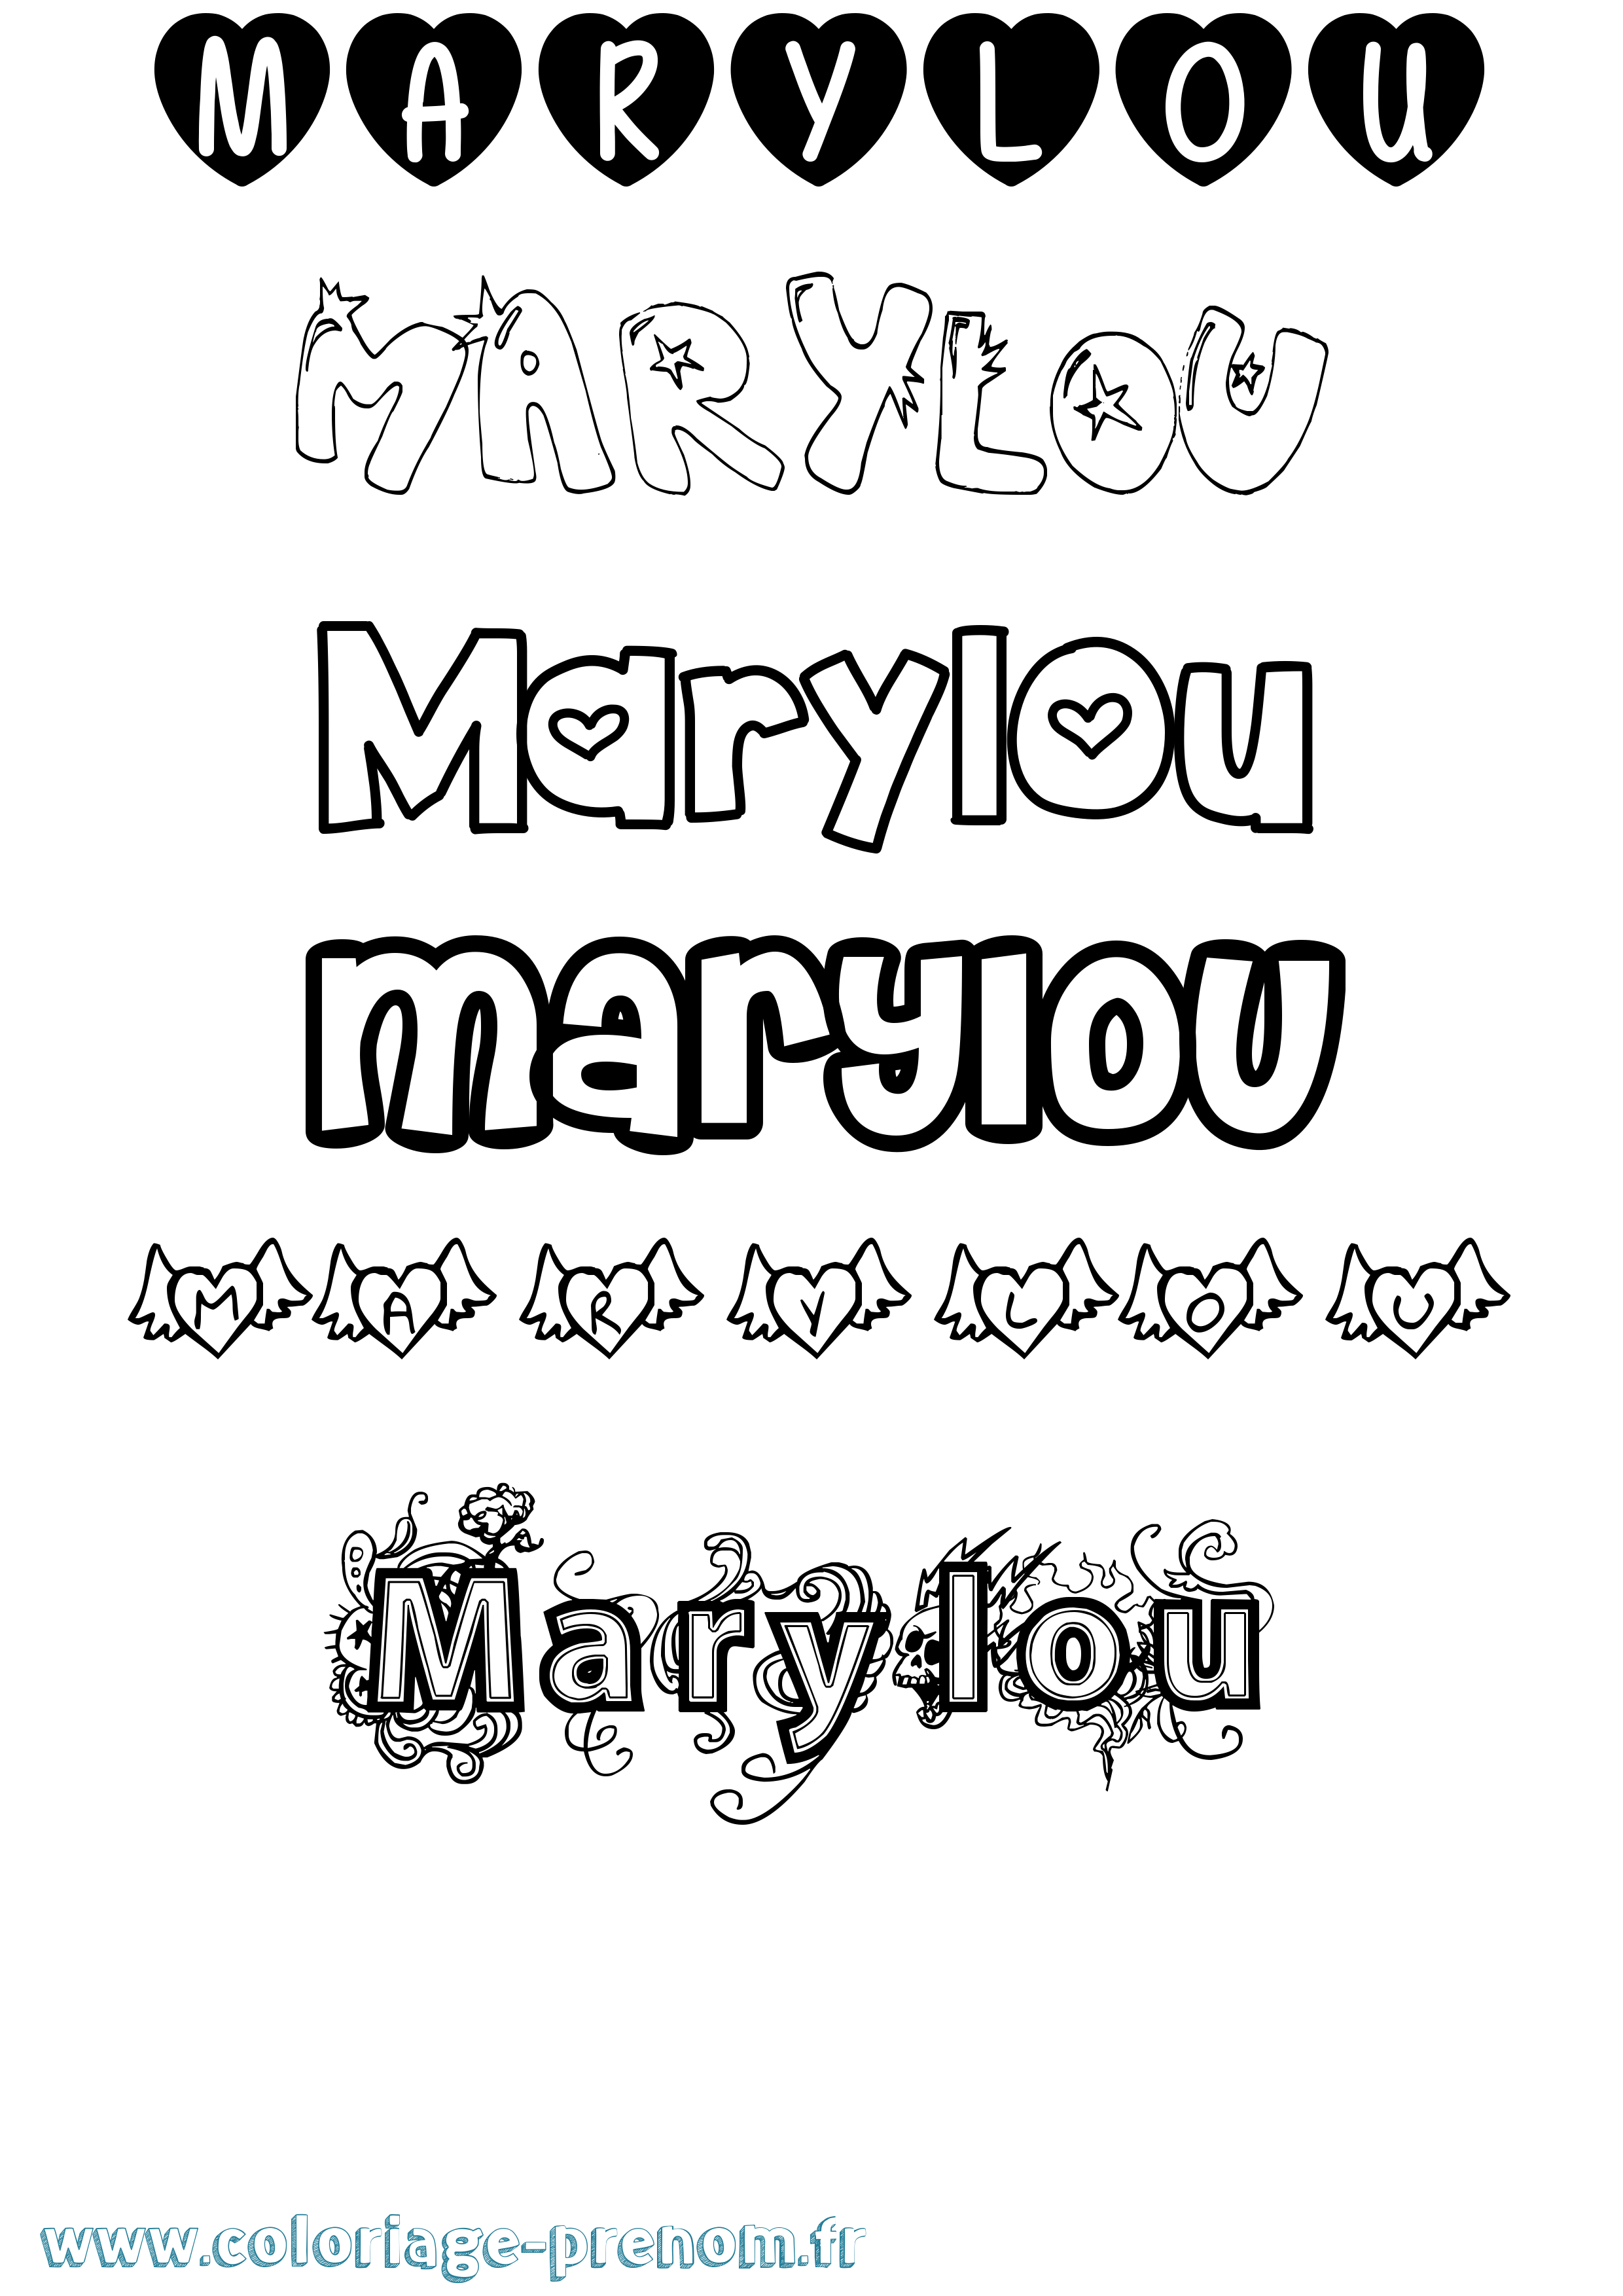 Coloriage prénom Marylou